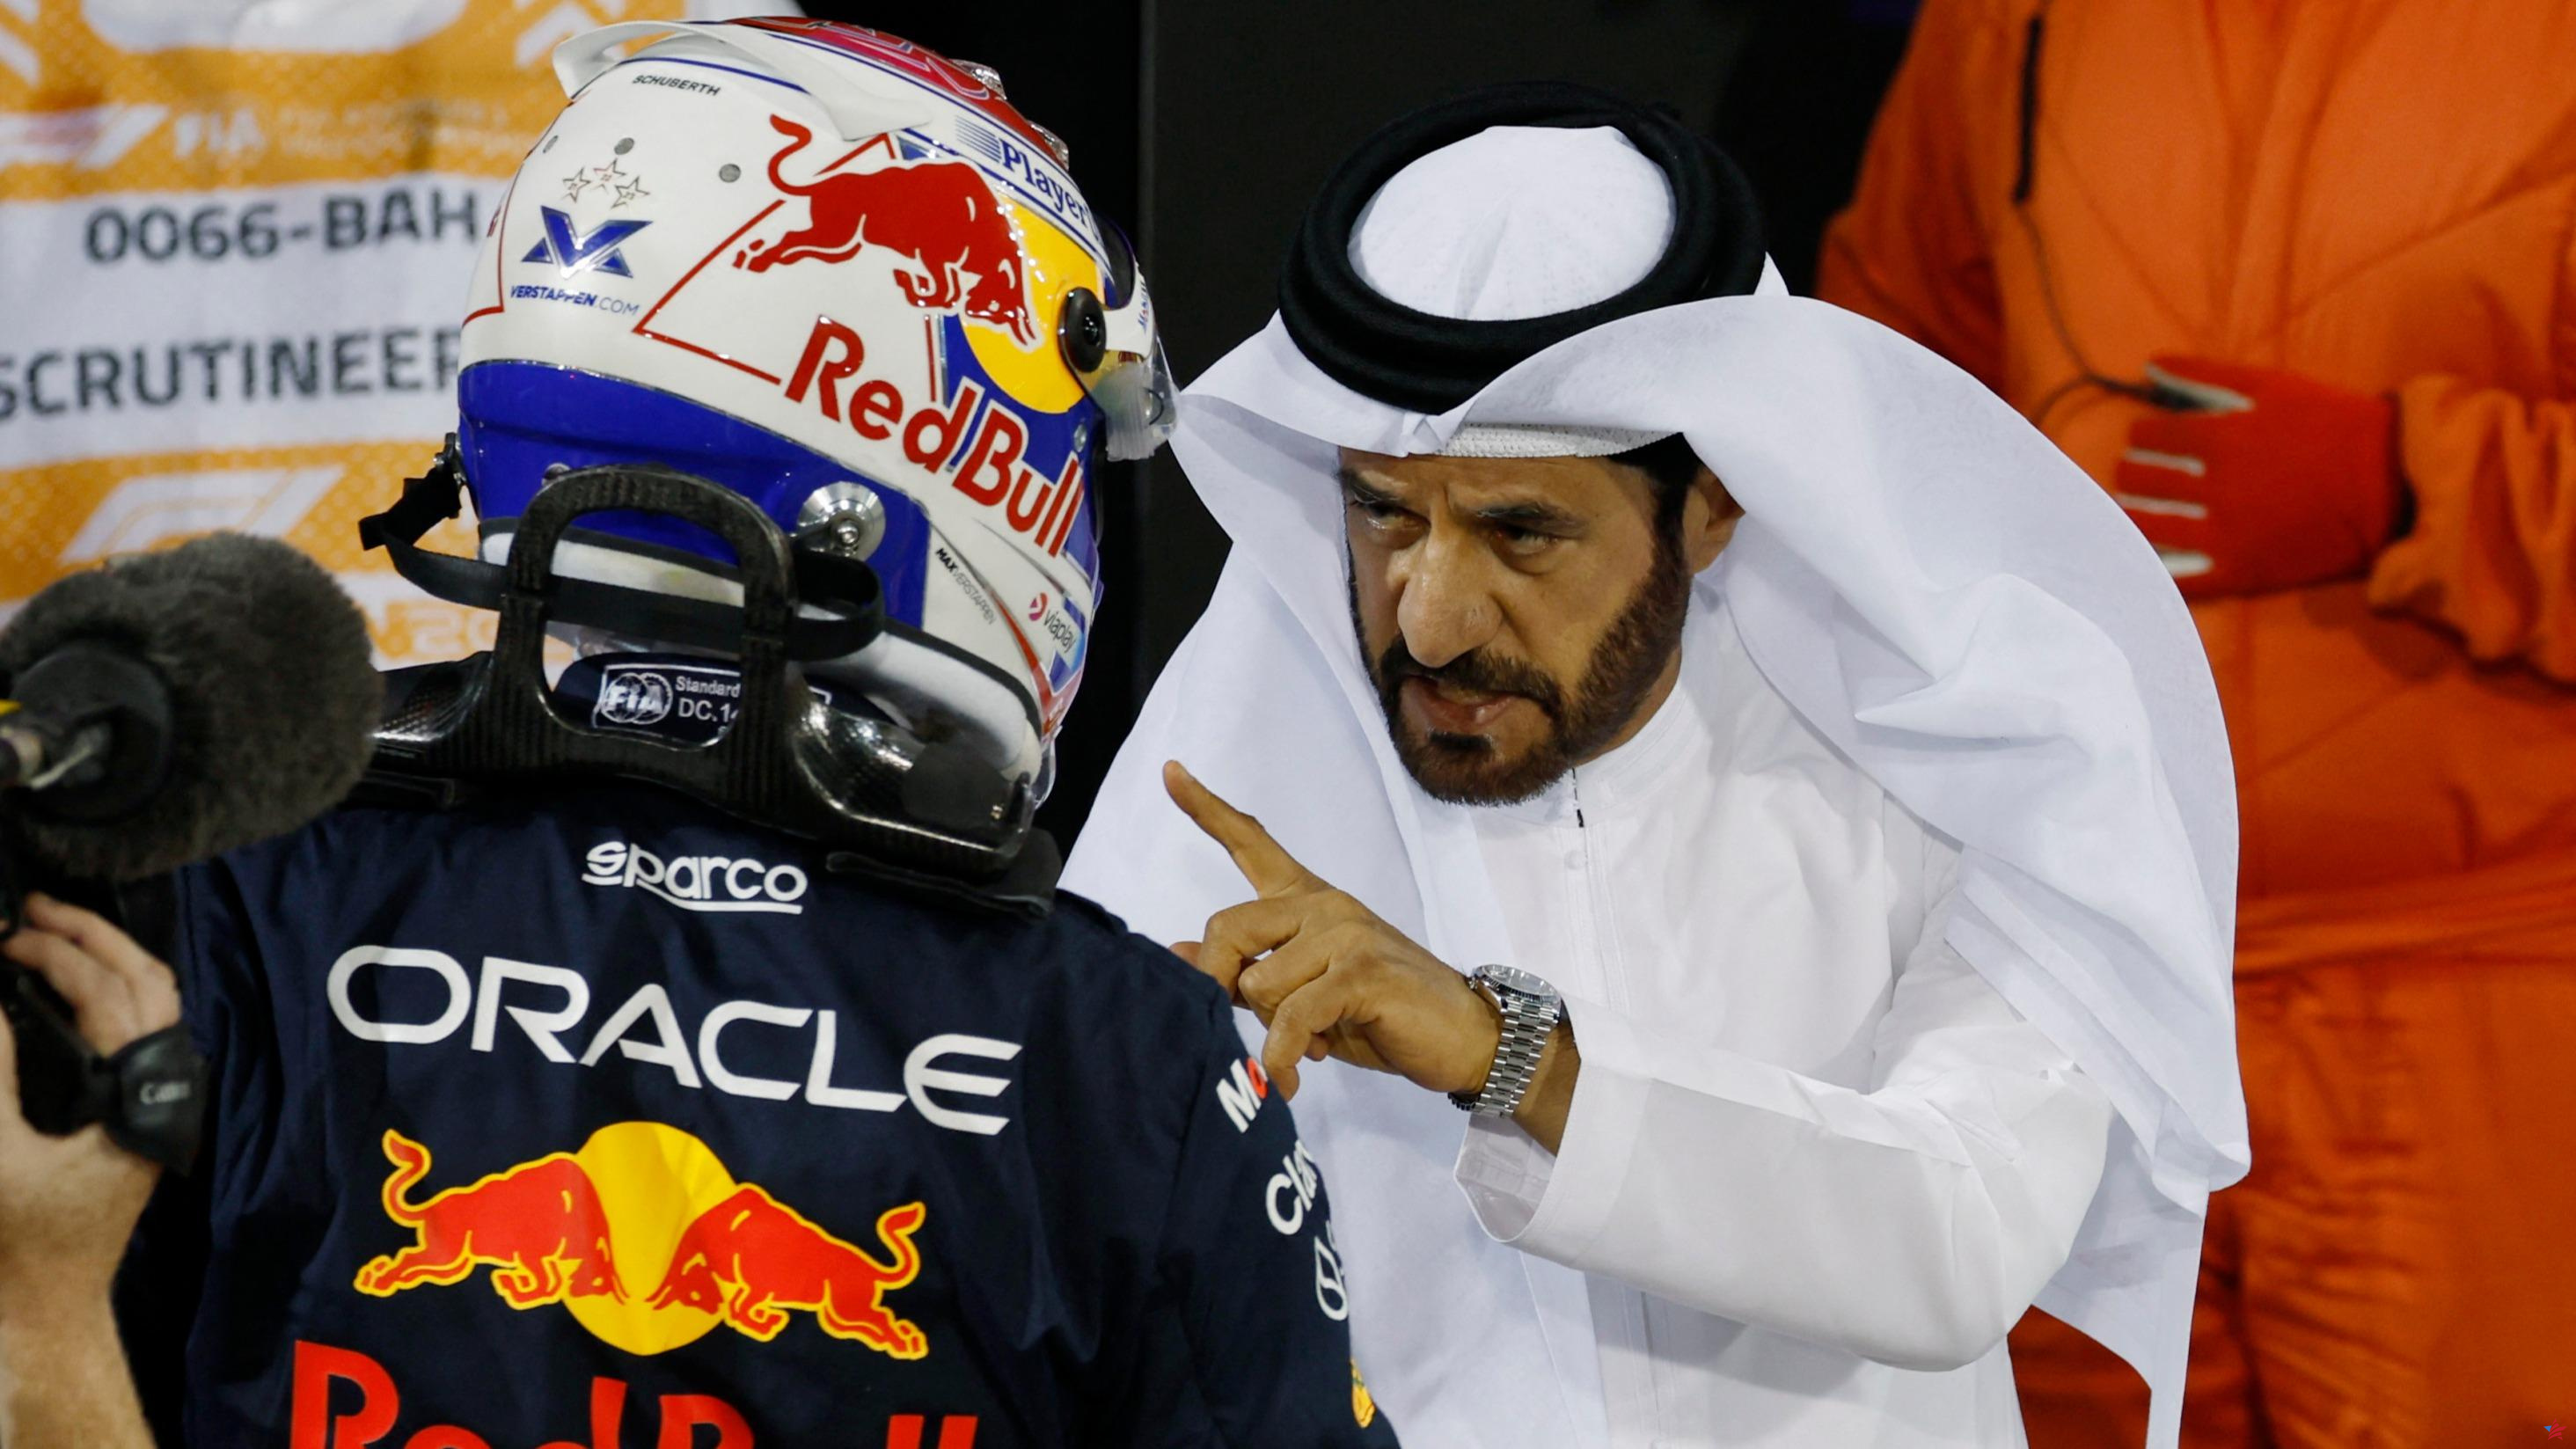 Fórmula 1: el presidente de la FIA sospechoso de influir en el resultado de una carrera en beneficio de Alonso